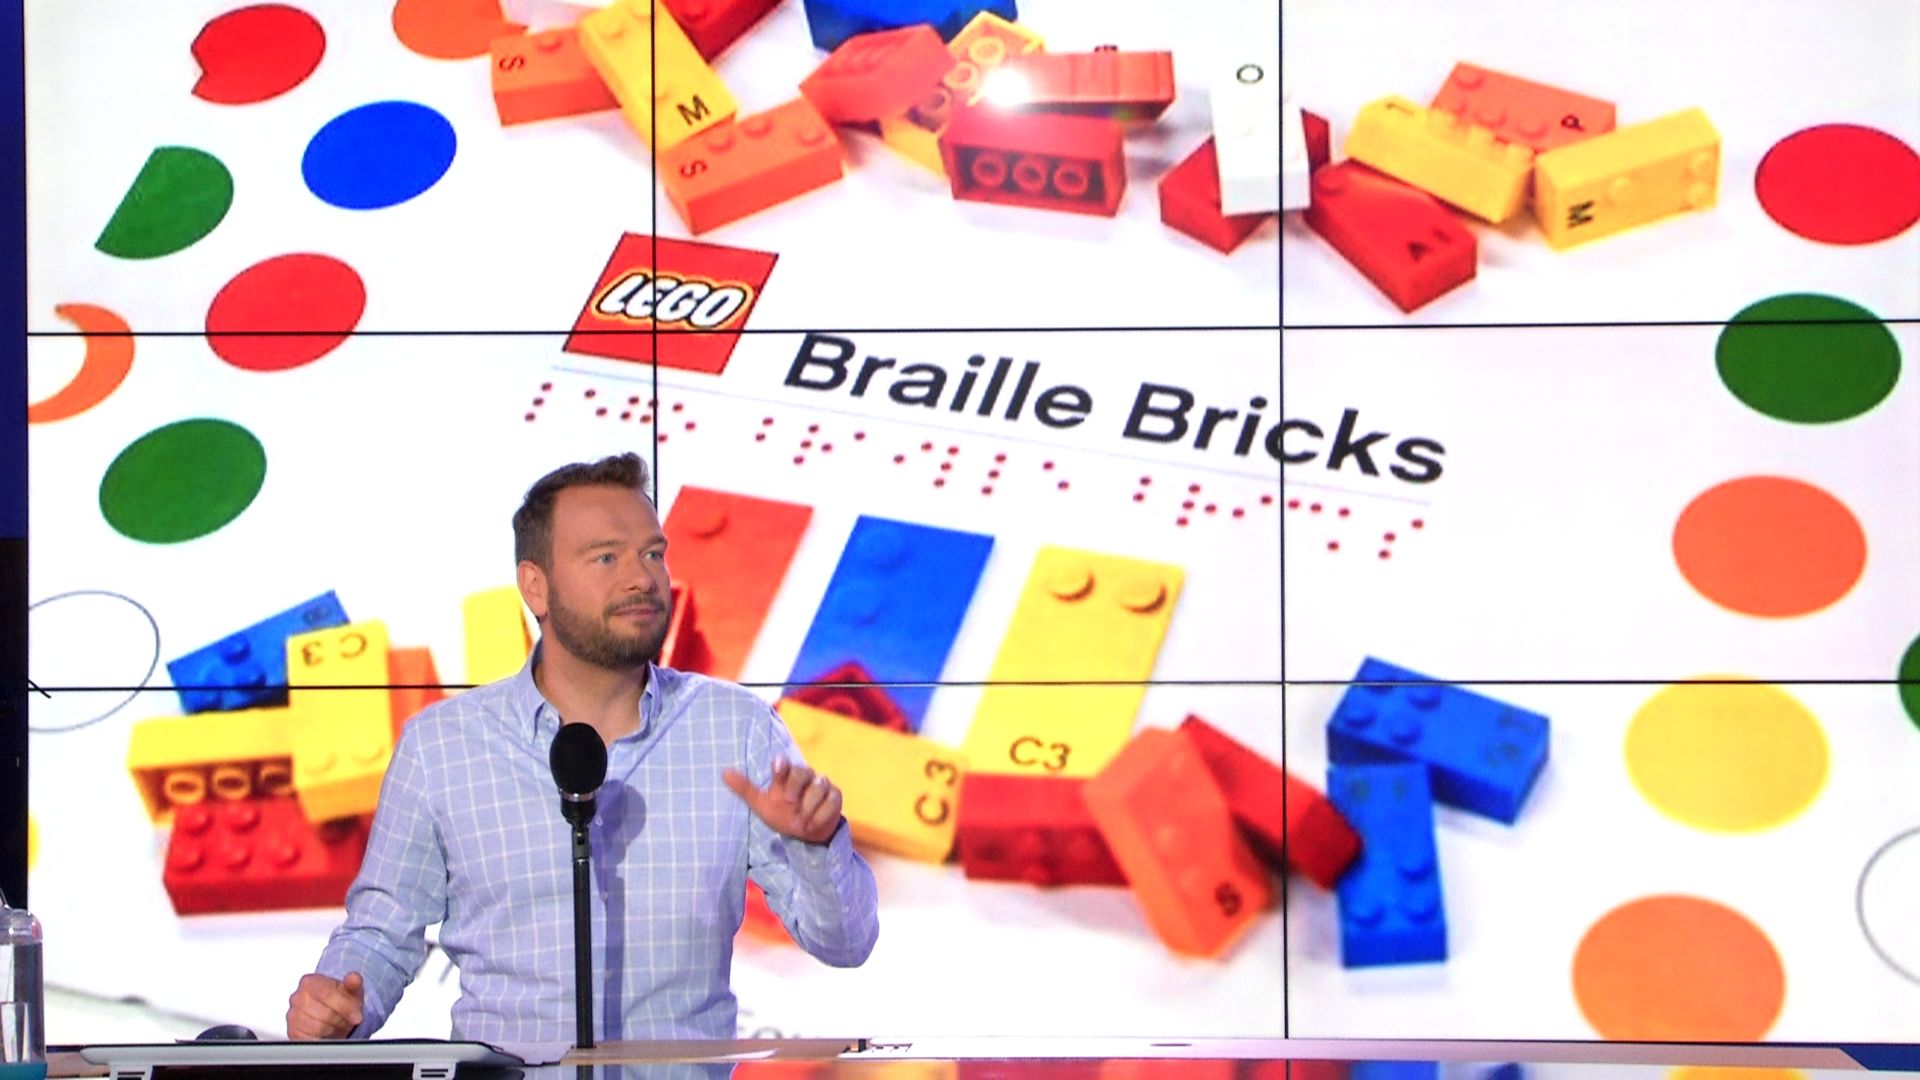 lego-lance-le-braille-bricks-pour-aider-les-enfants-malvoyants